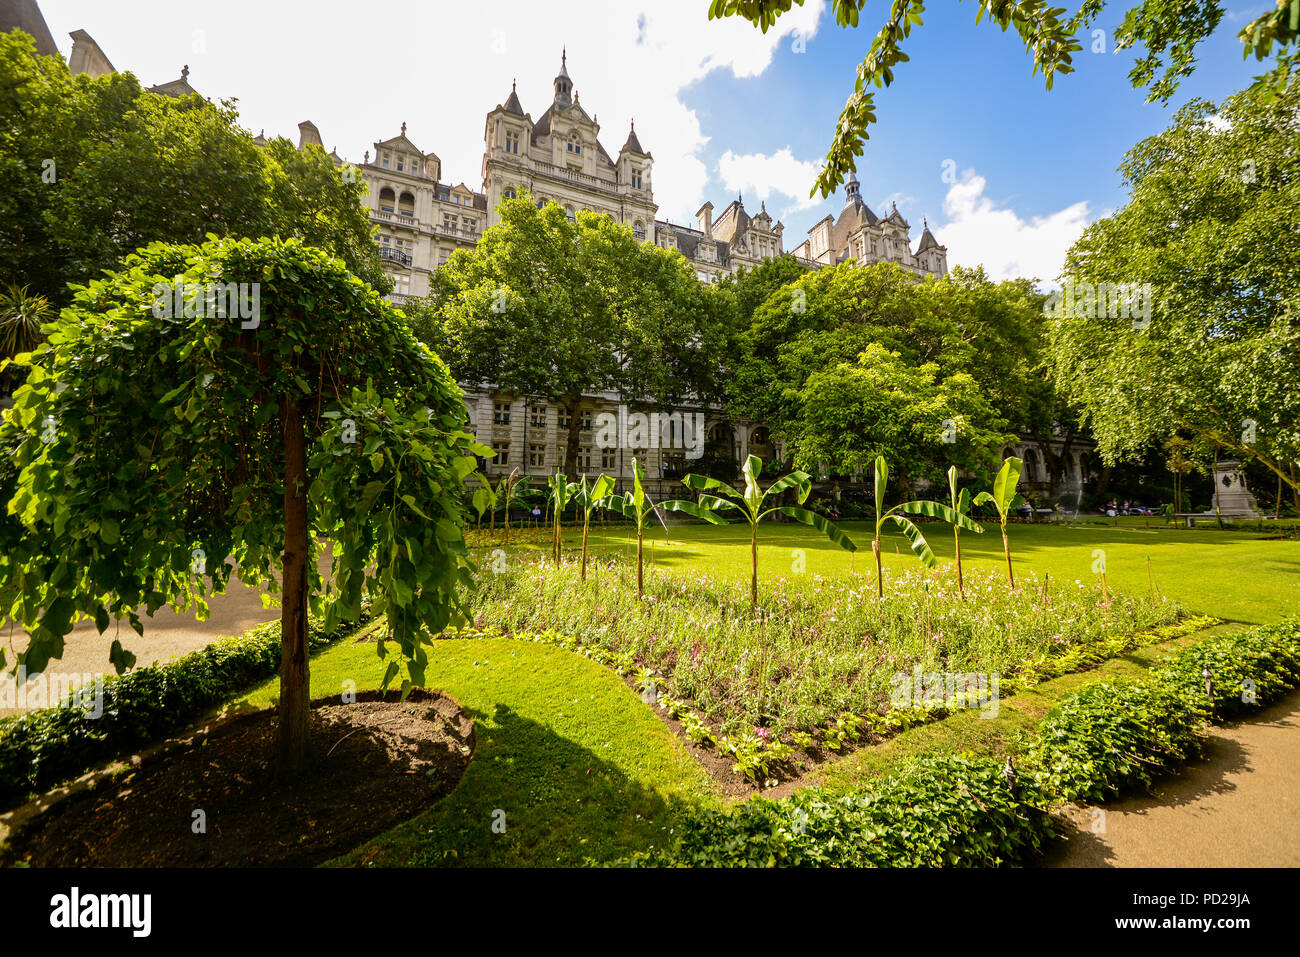 Victoria Embankment Gardens, Westminster, London, UK. Oasis de verdure dans la ville de Westminster. Zone de verdure tranquille pour le public de profiter Banque D'Images